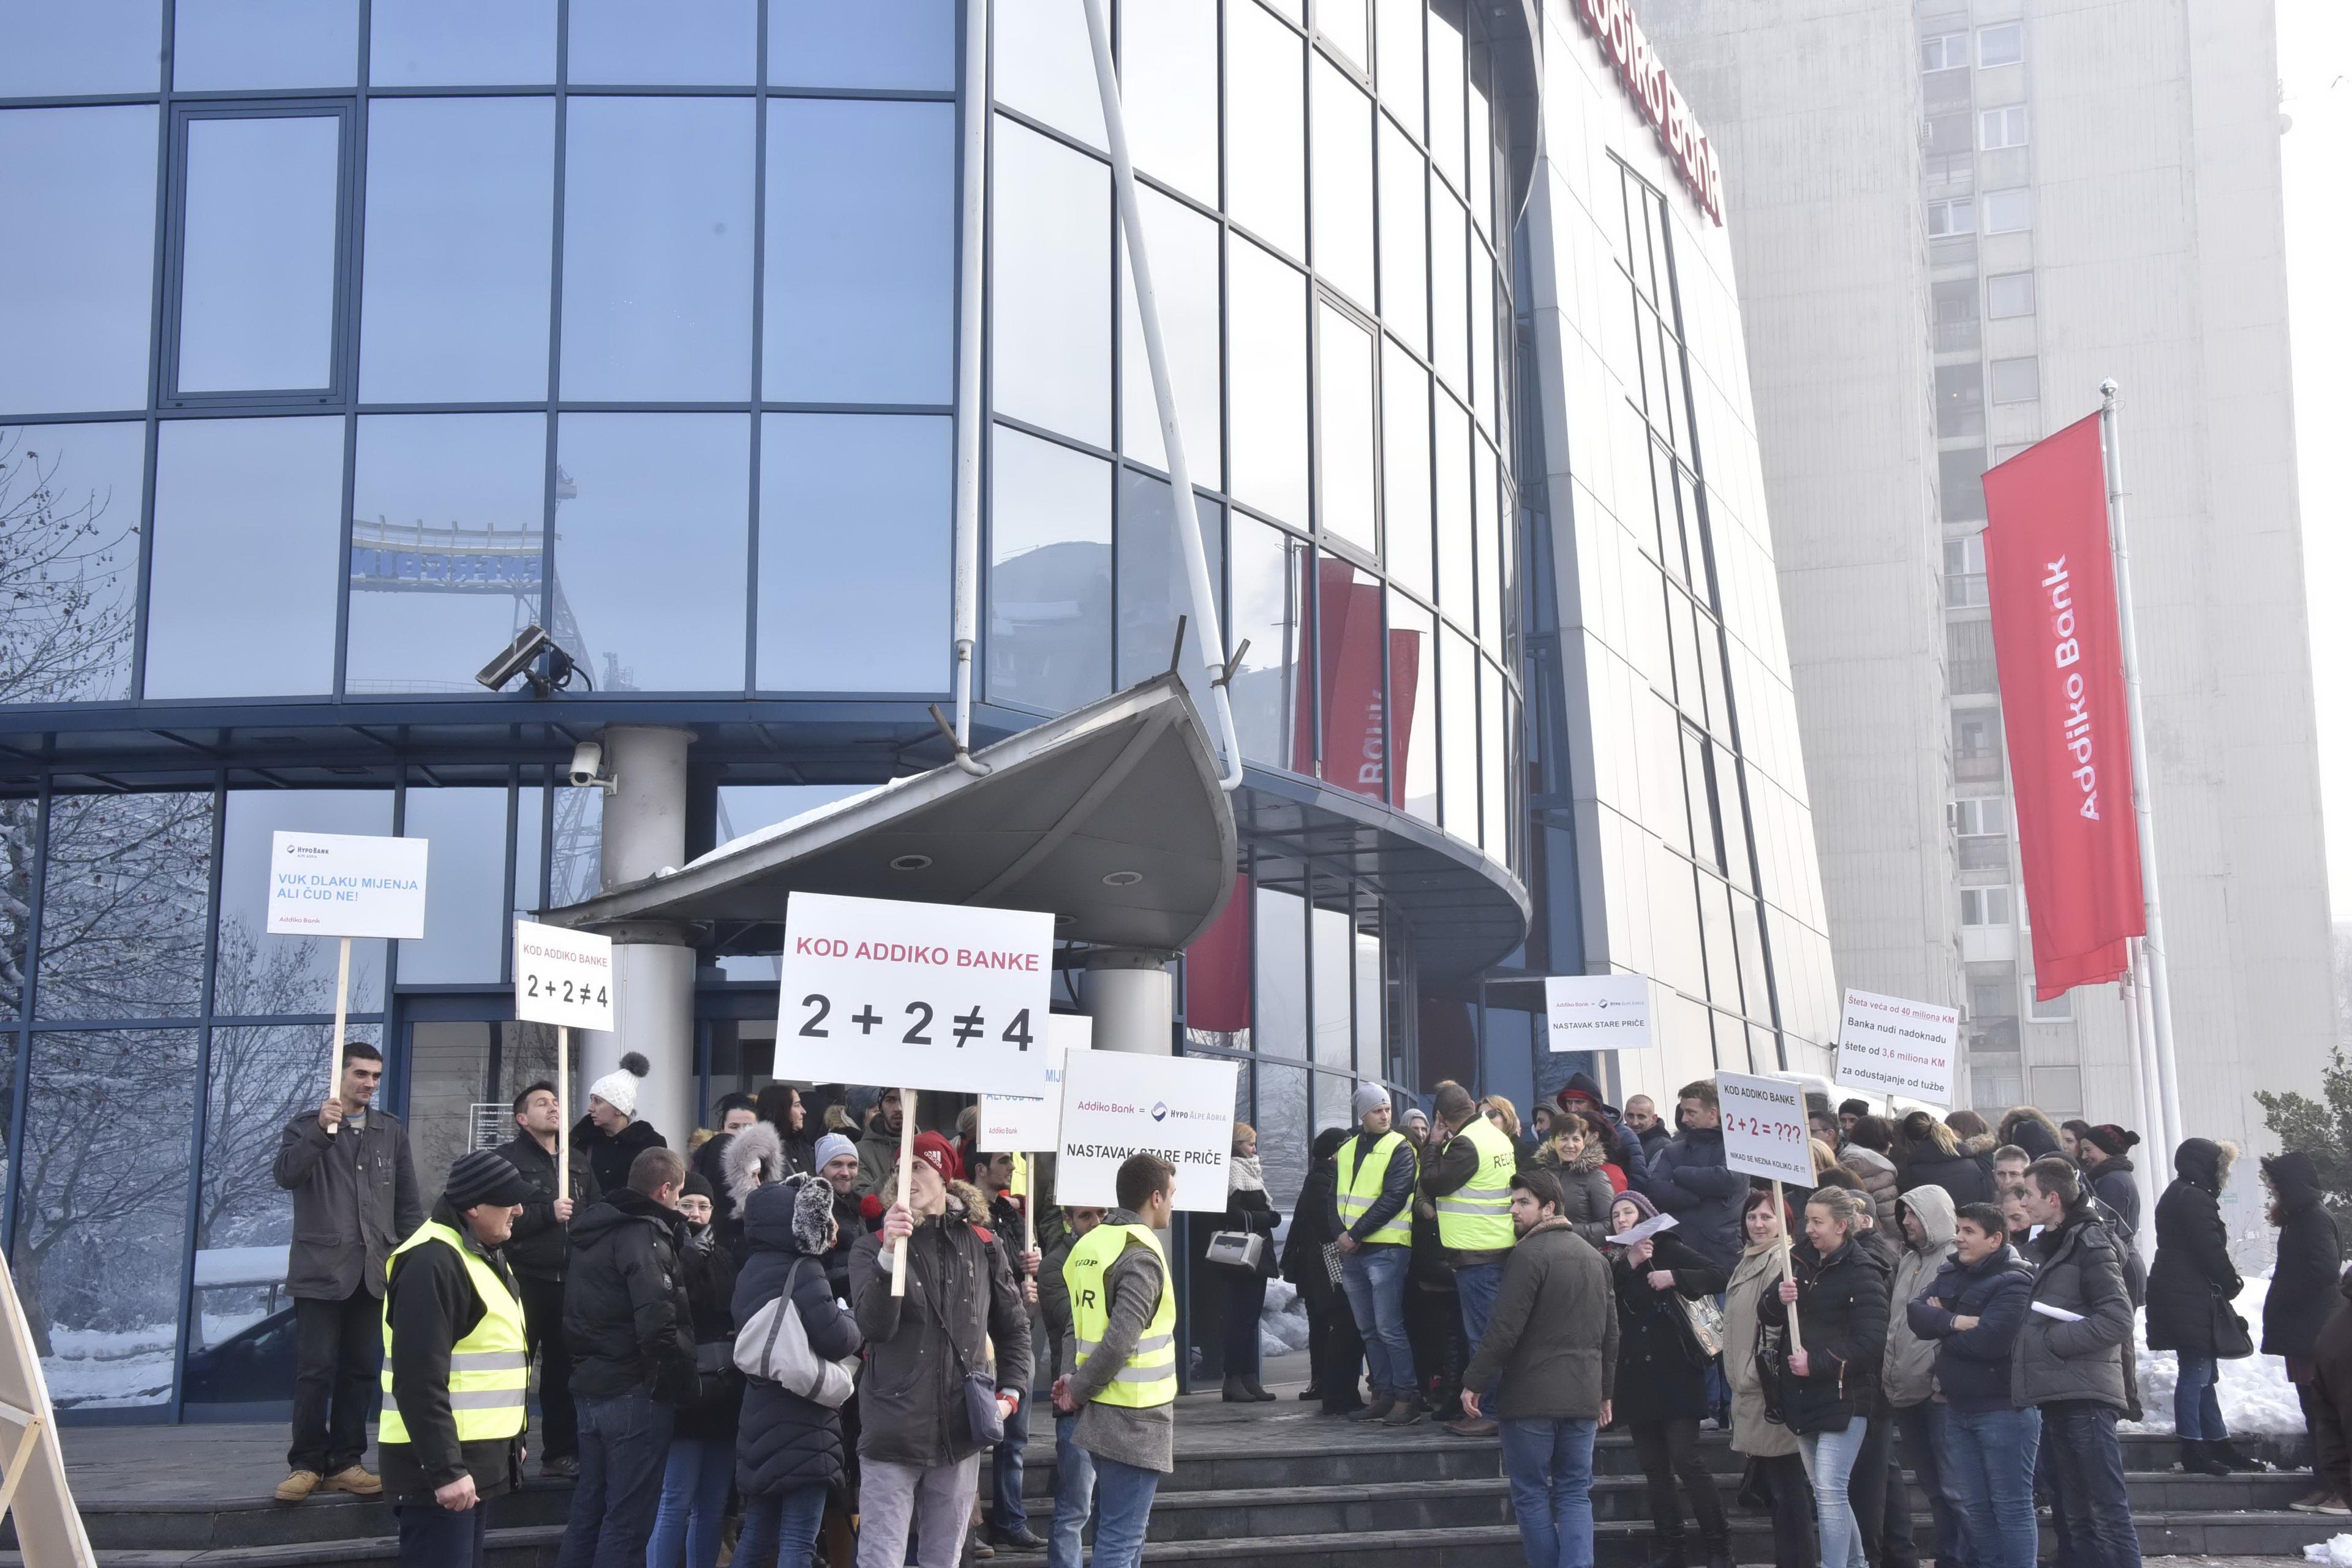 UKK ''Švicarac'' obavijestilo Parlament FBiH: "Addiko banka" ne poštuje zaključak Predstavničkog doma